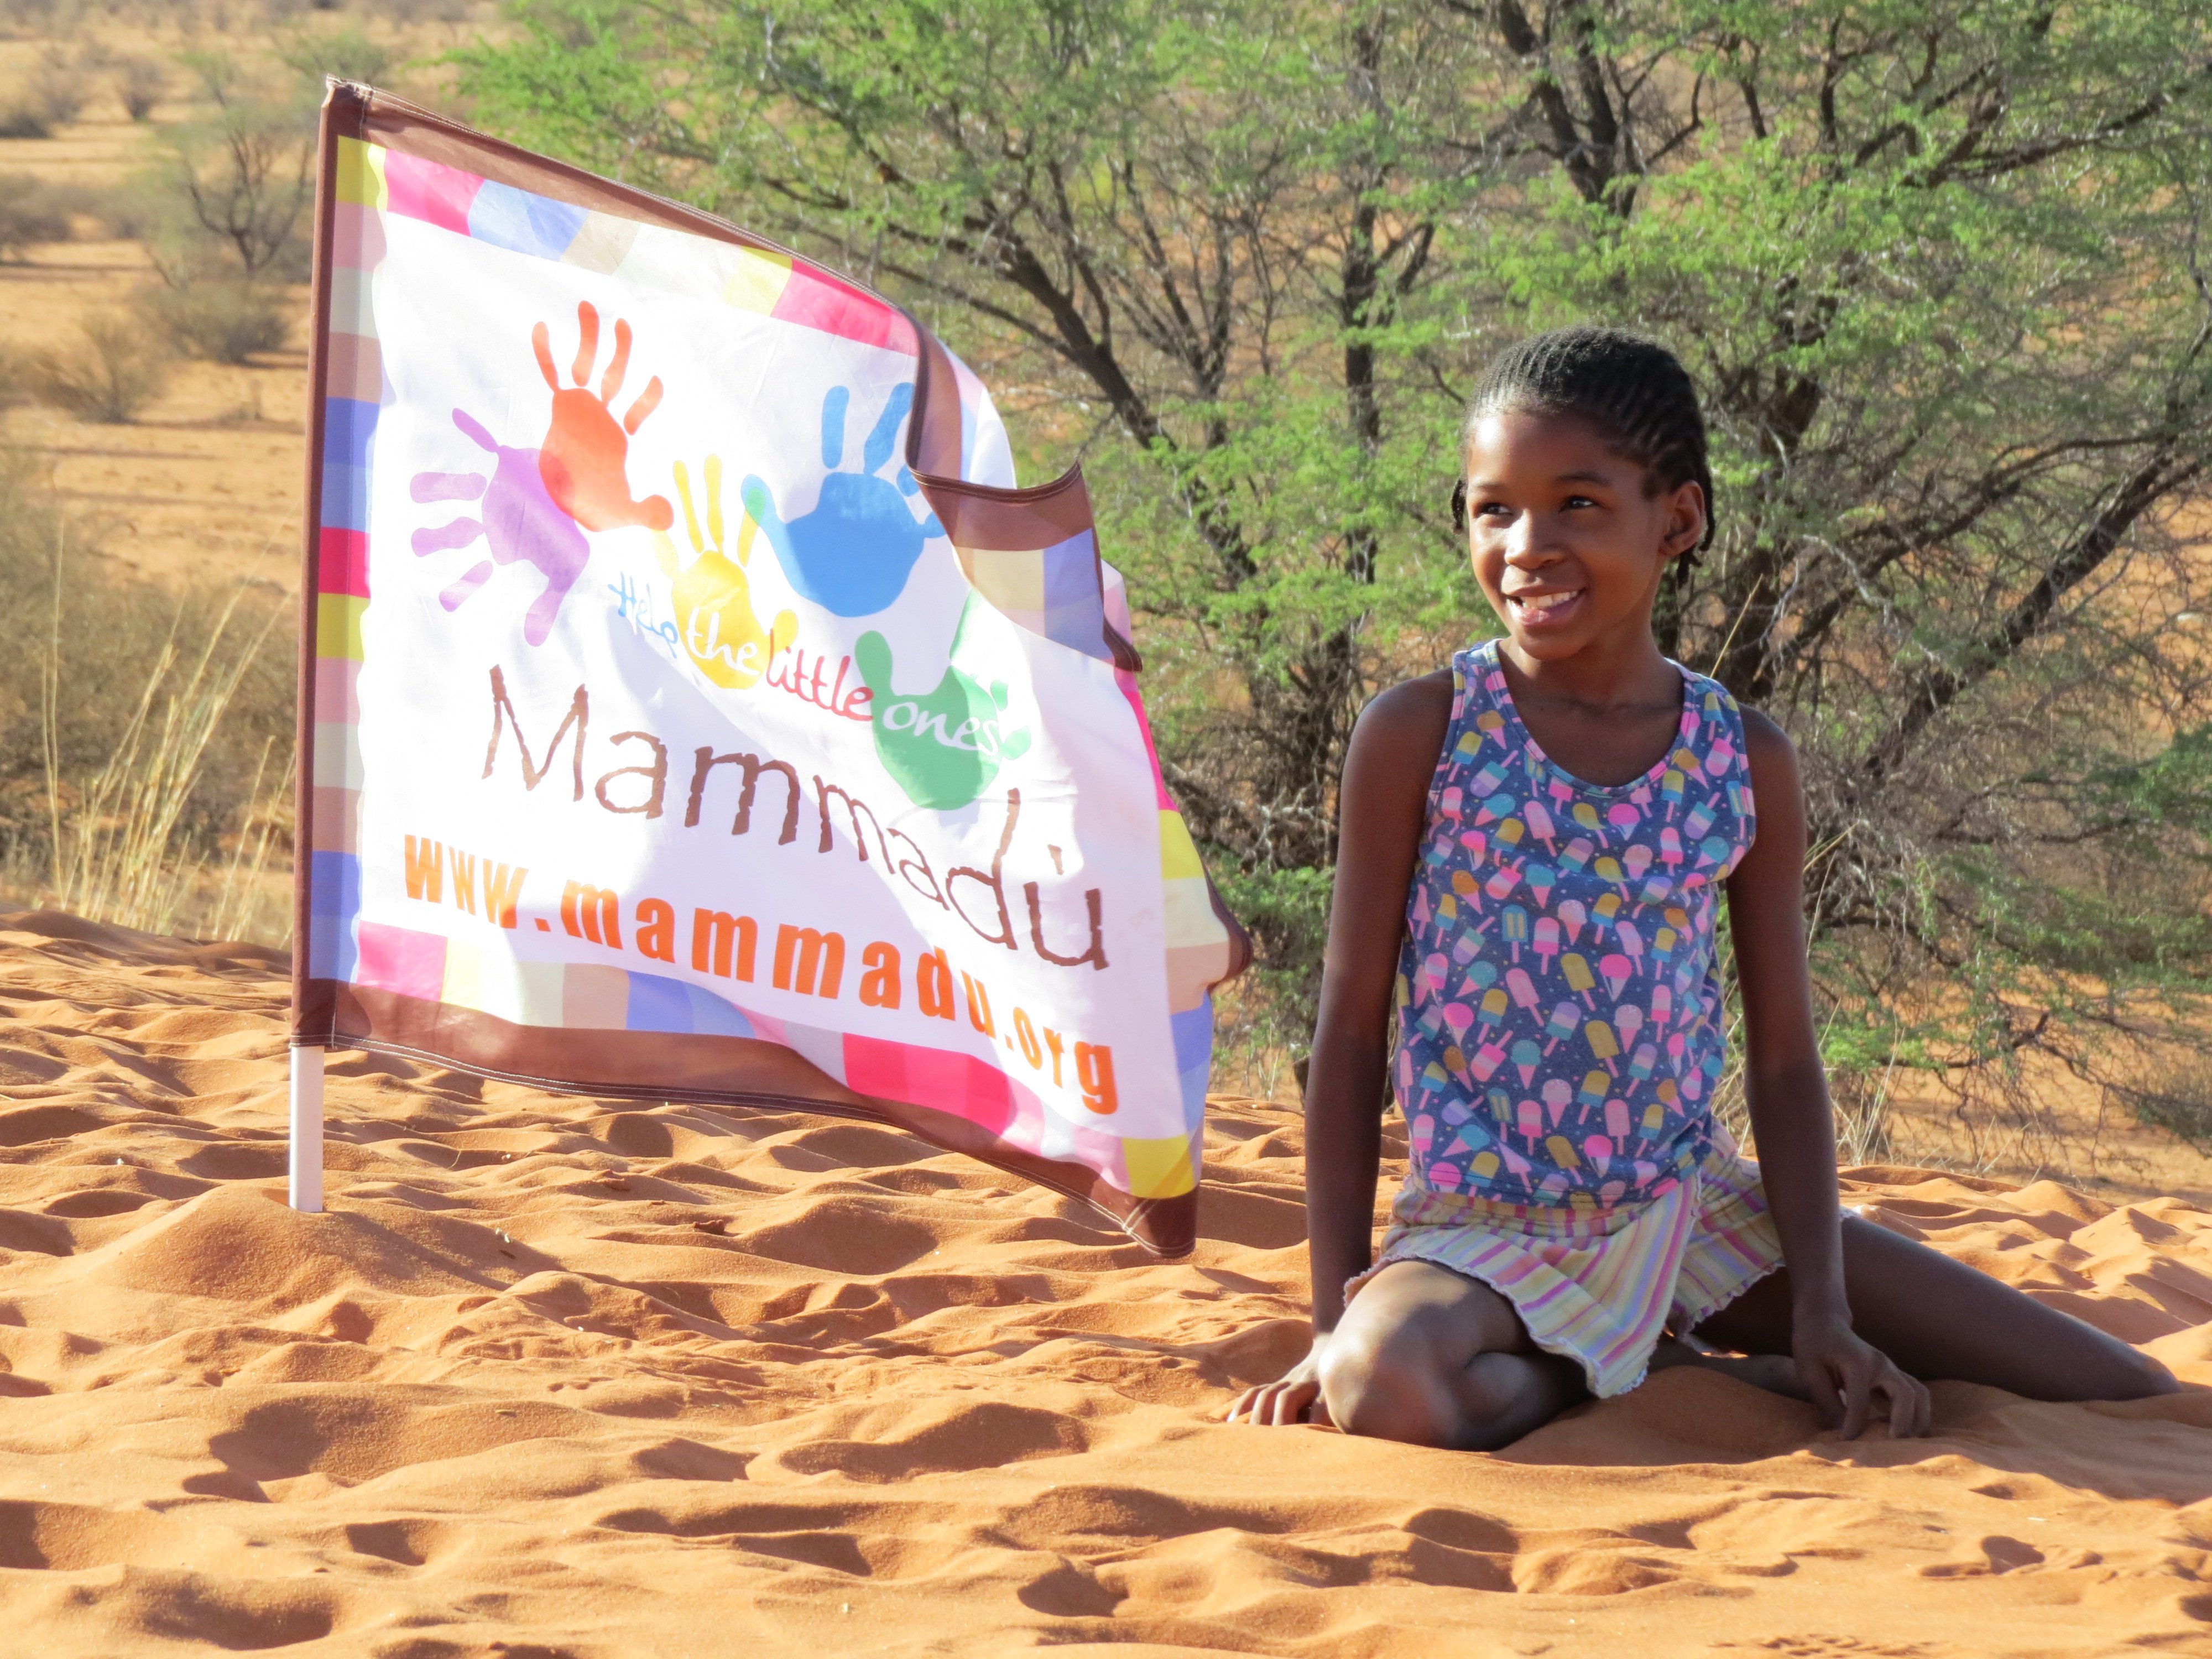 For Family Reisen soziales Engagement - Kinderhilfsprojekt Mammadù Namibia - Mädchen mit Flagge